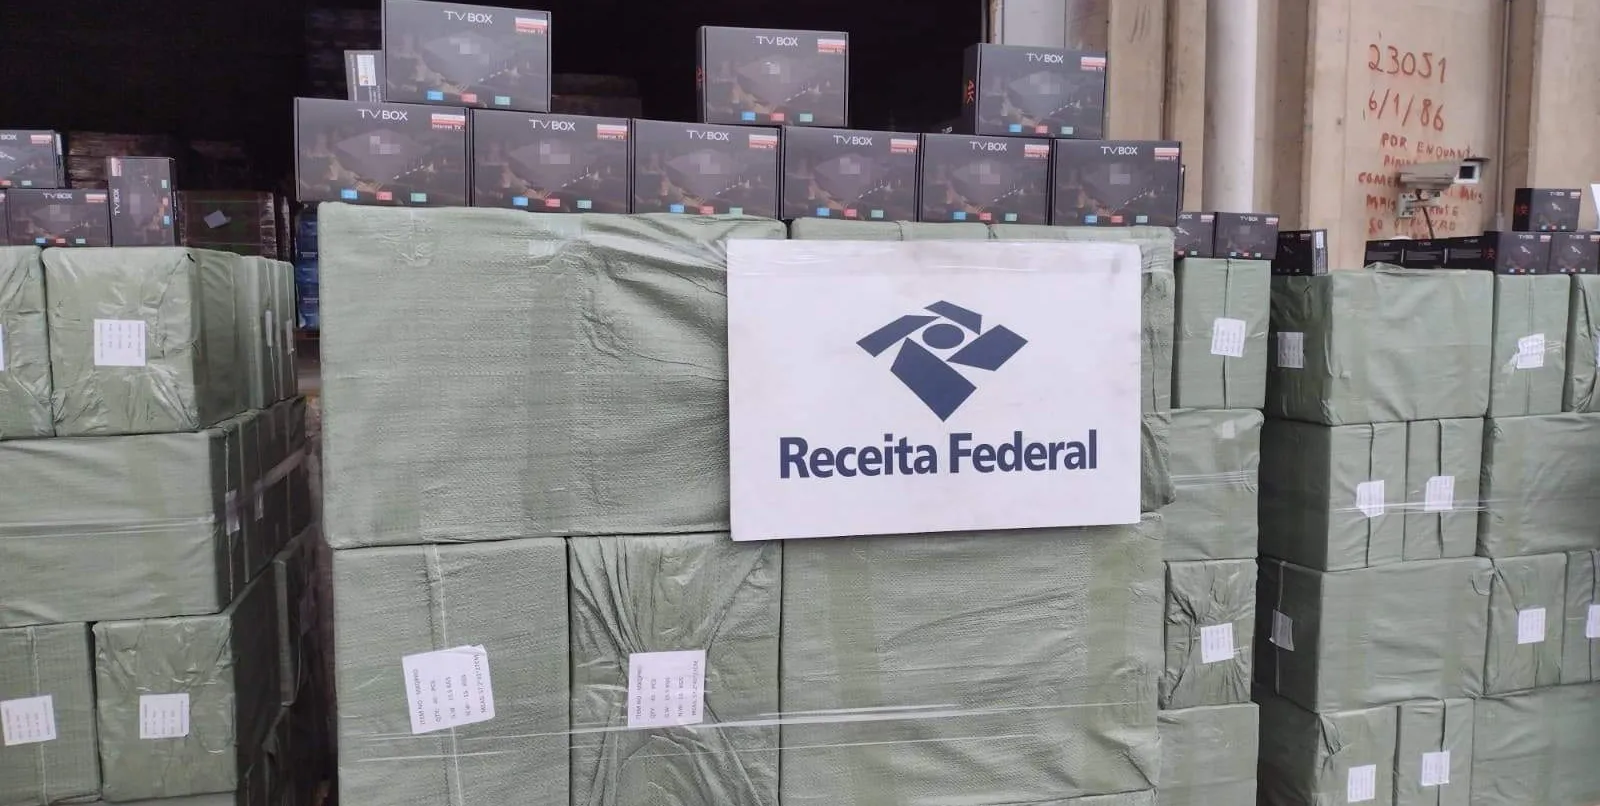  Operação apreende 40 mil unidades adulteradas de TV Box no Porto de Santos 